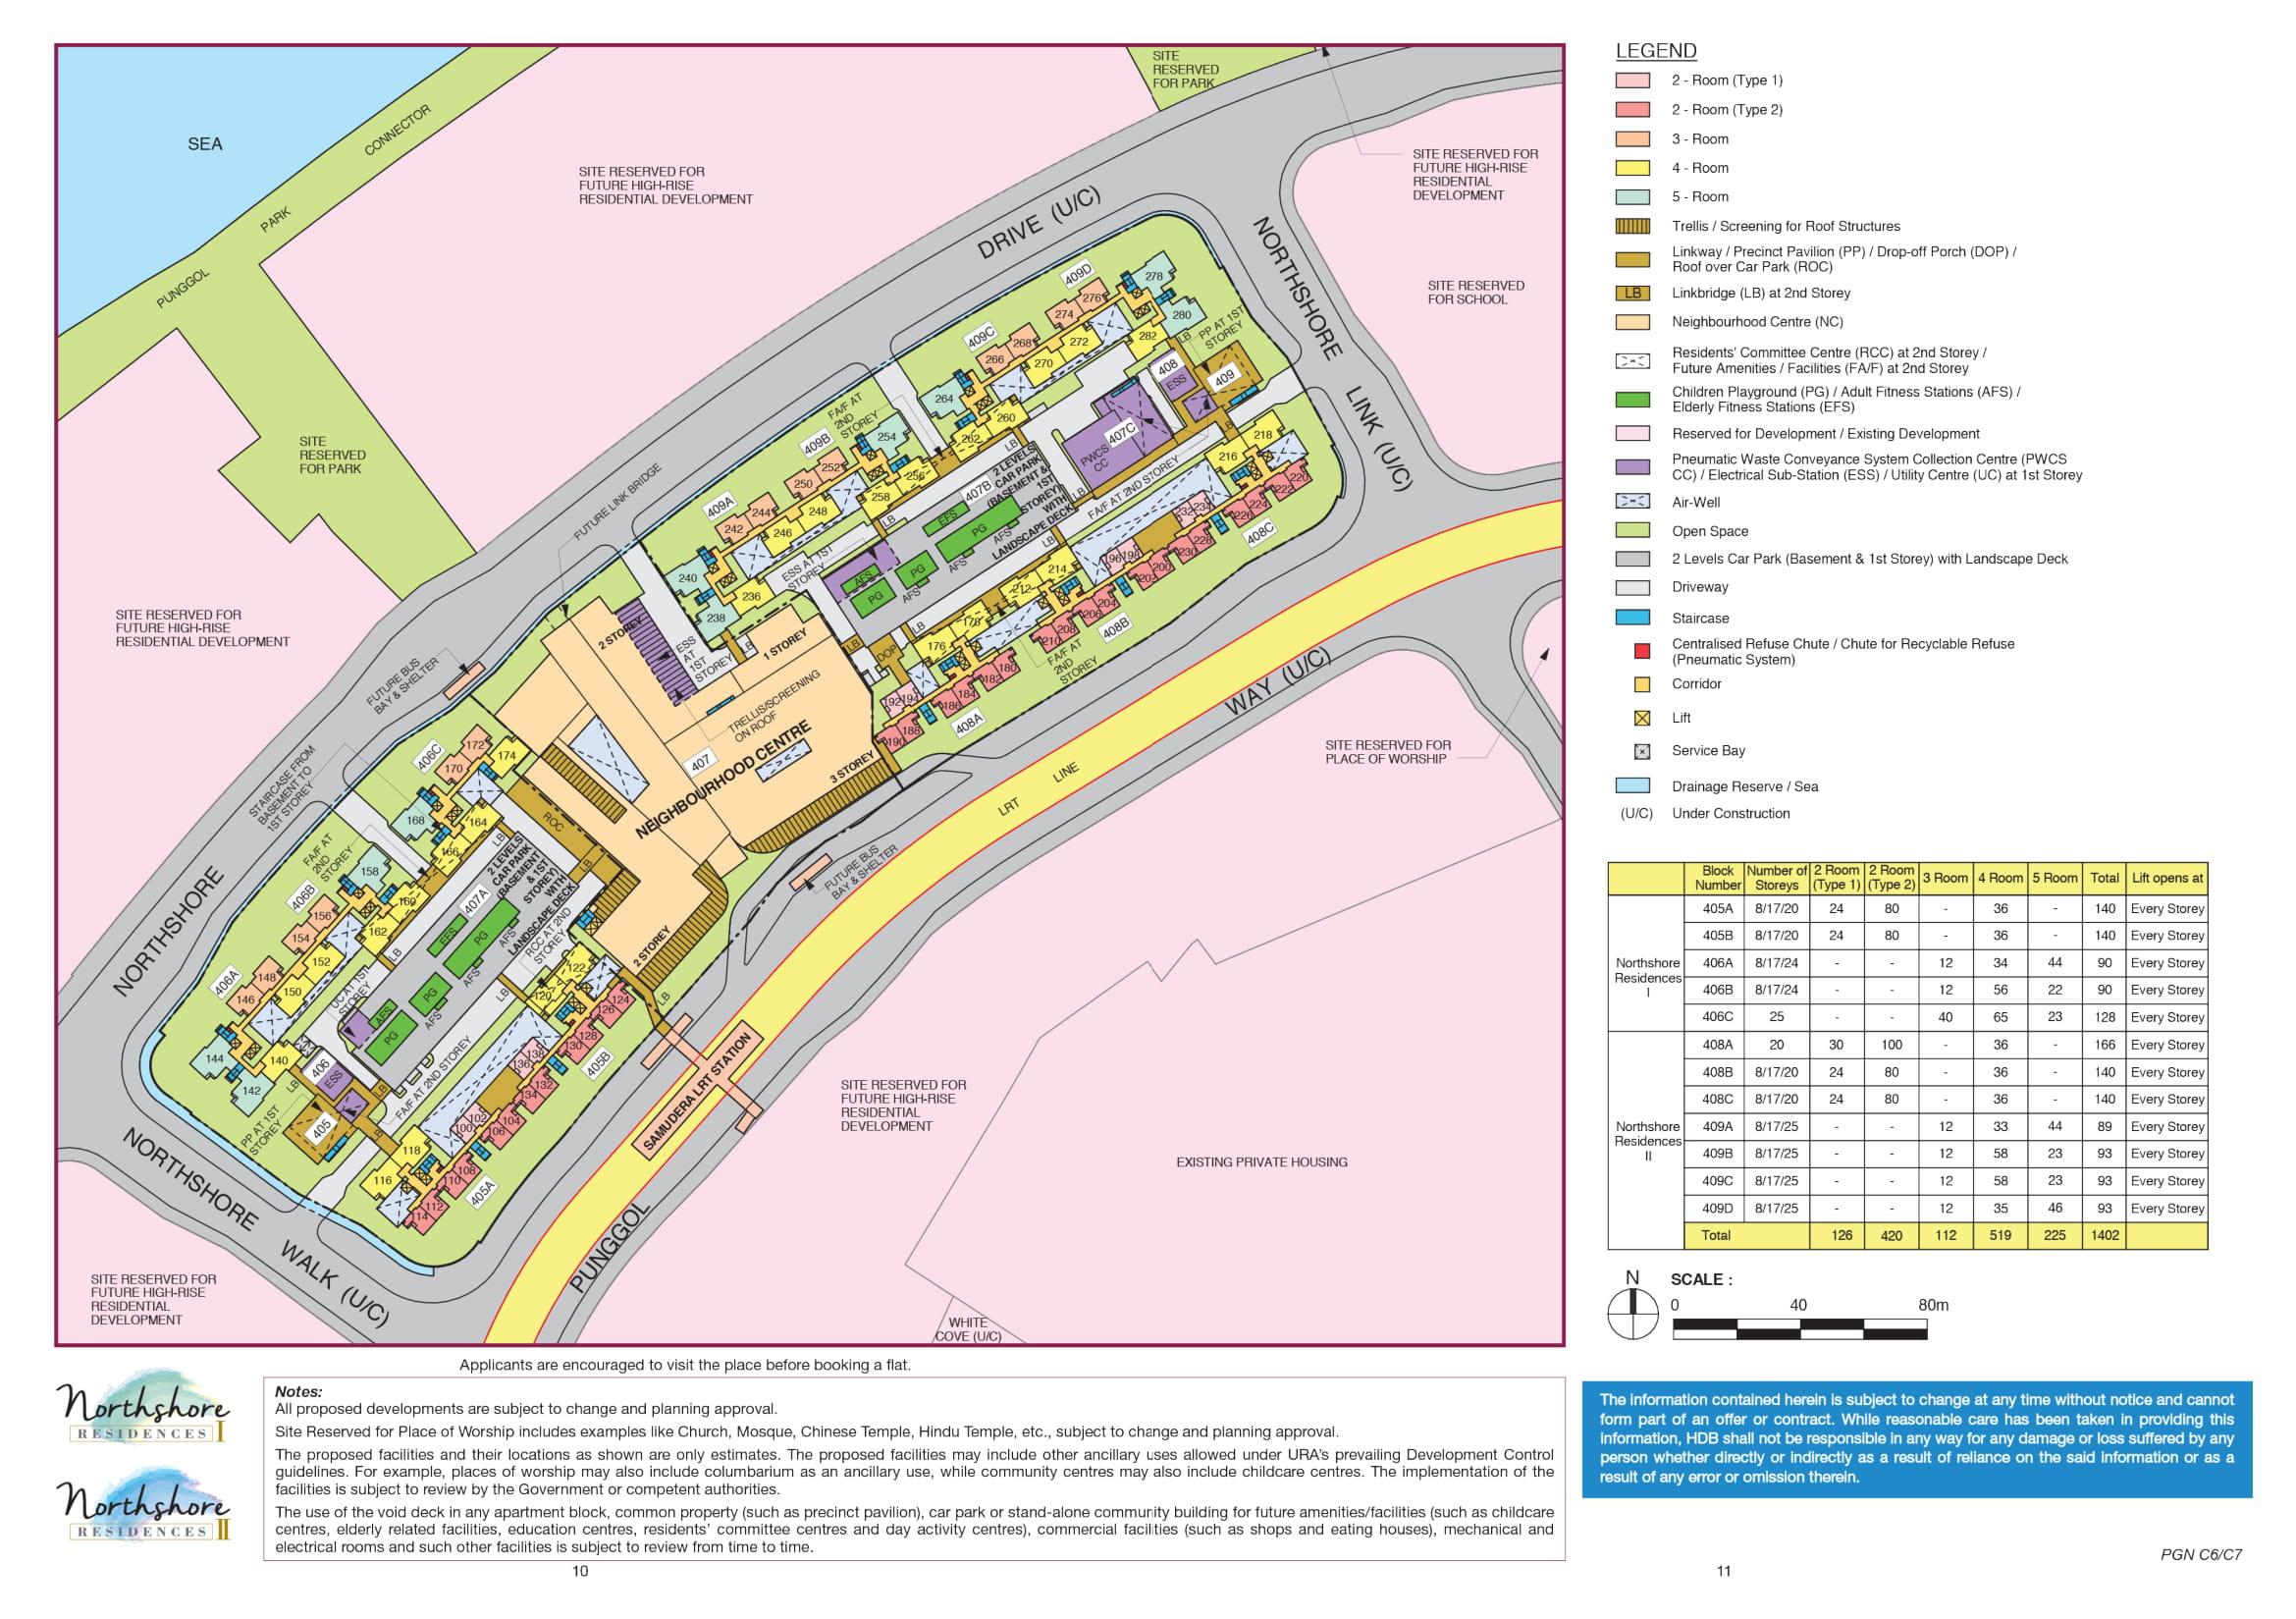 Northshore Residences II site-plan